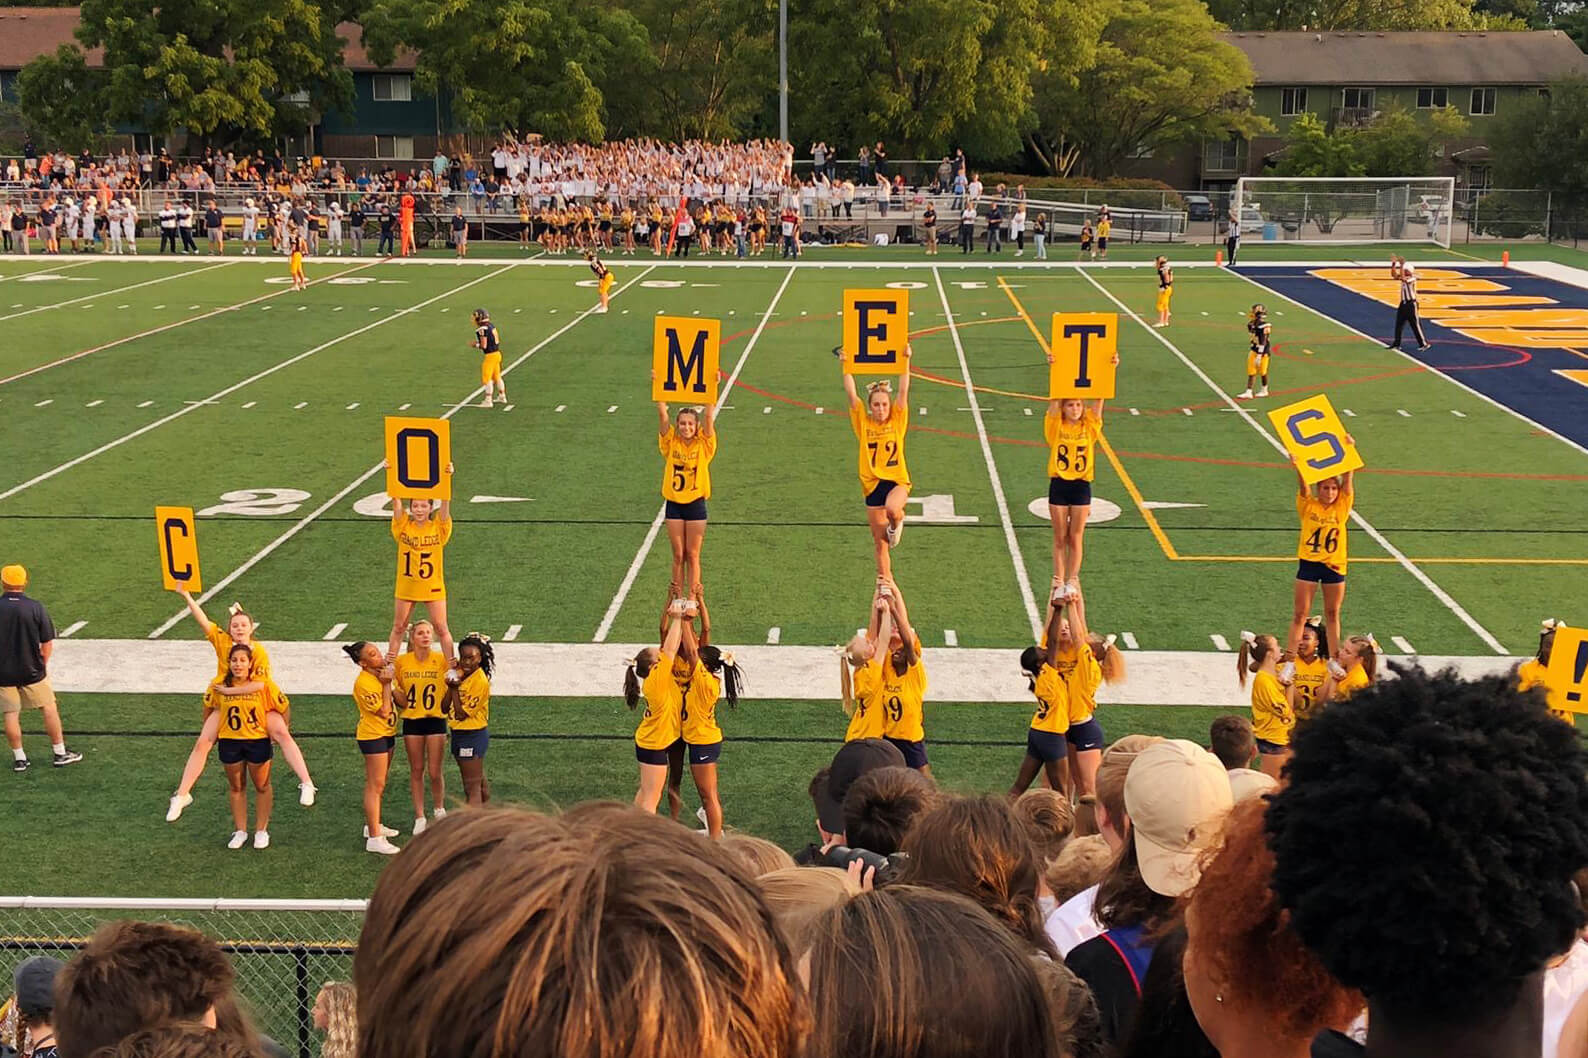 Equipo de animadoras, sujetan letreros con la palabra "Comets", durante un partido de fútbol americano